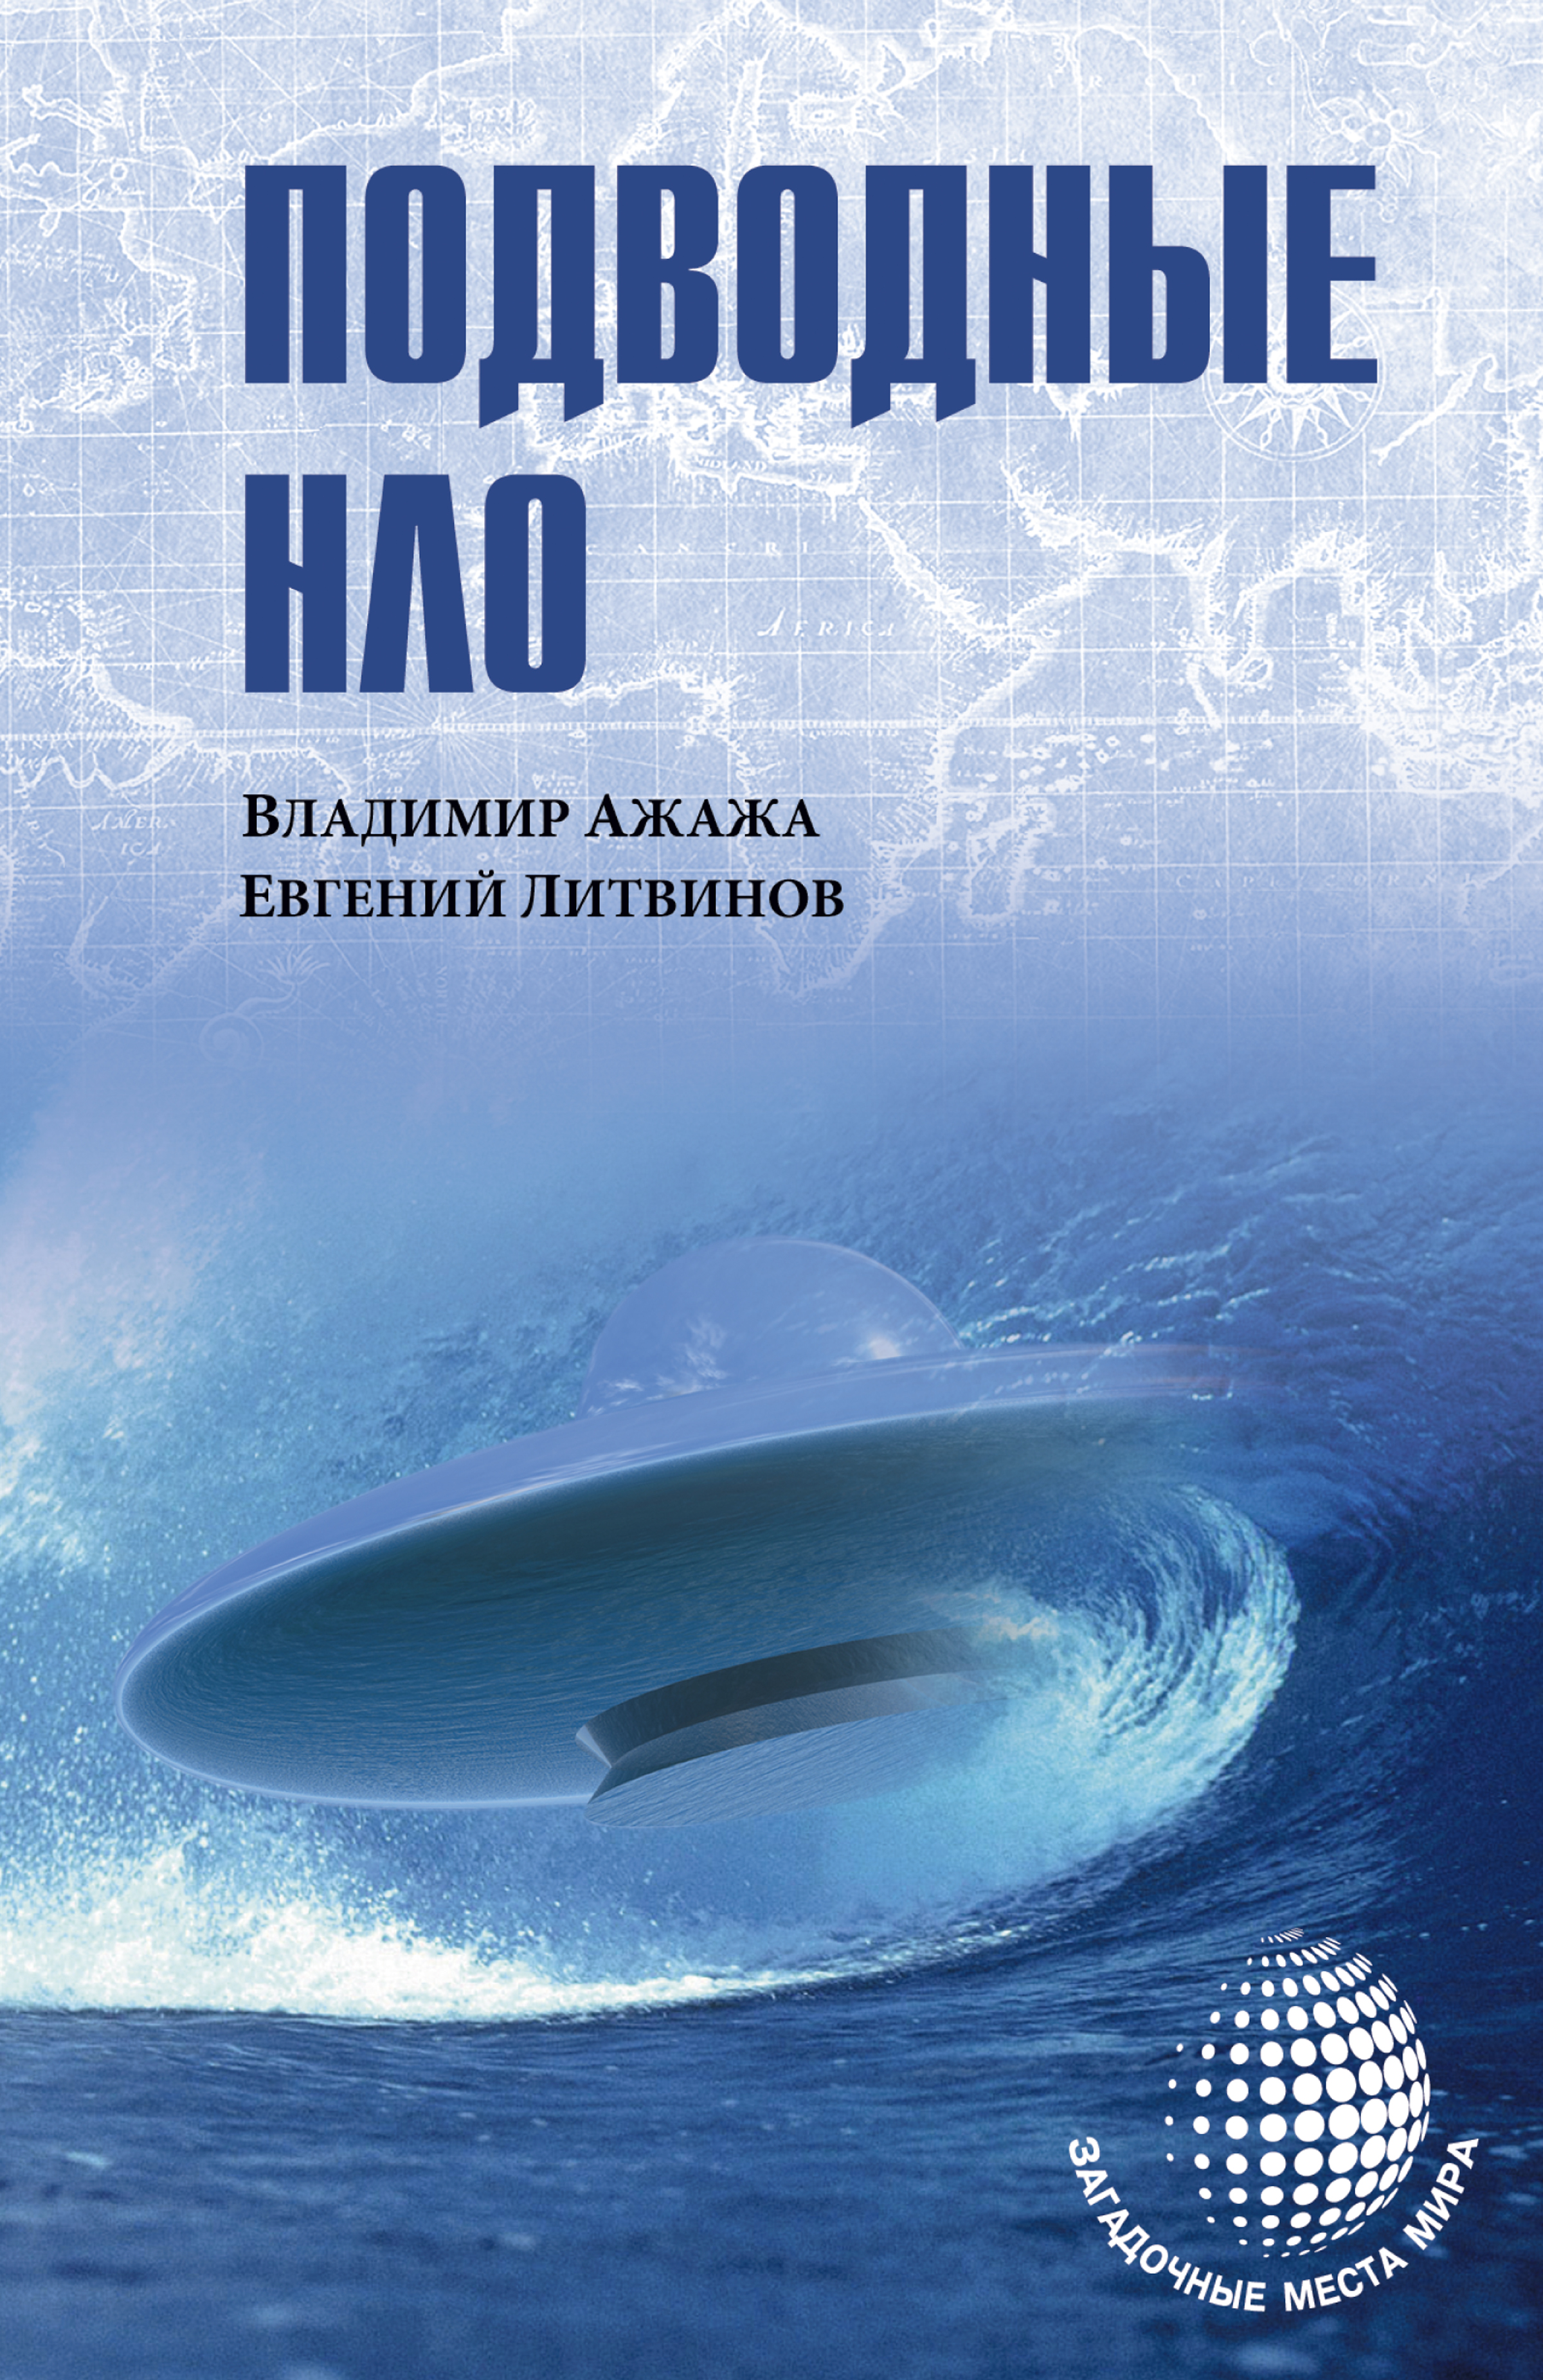 Книга Подводные НЛО из серии , созданная Евгений Литвинов, Владимир Ажажа, написана в жанре Документальная литература. Стоимость электронной книги Подводные НЛО с идентификатором 32842351 составляет 149.00 руб.